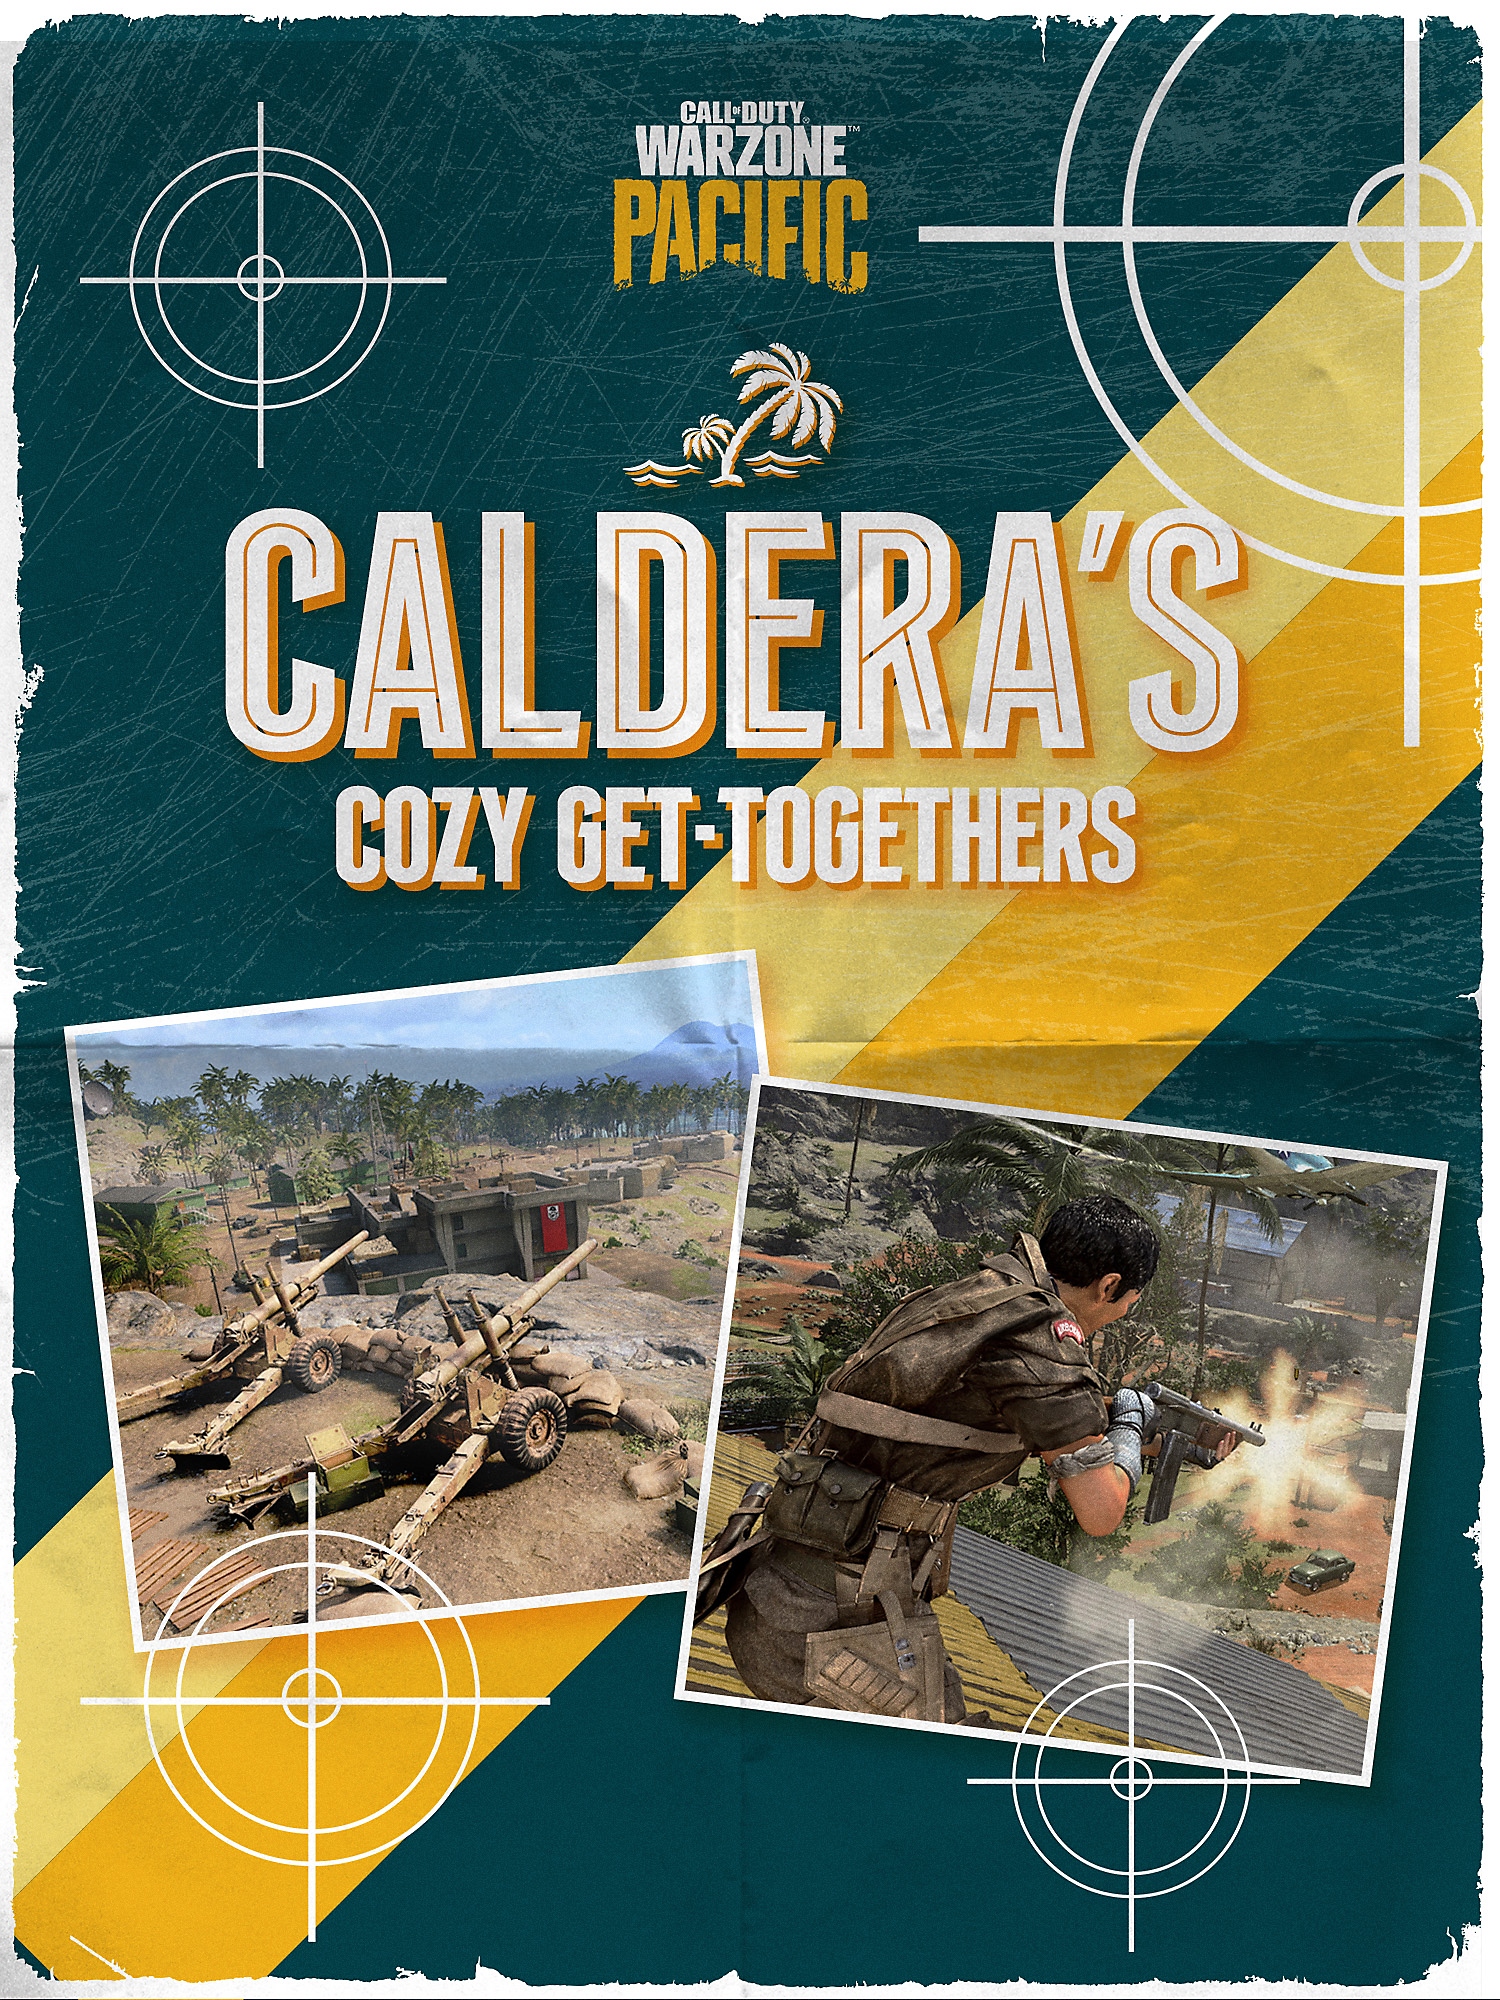 Page de couverture de la brochure Les lieux de rencontre de Caldera